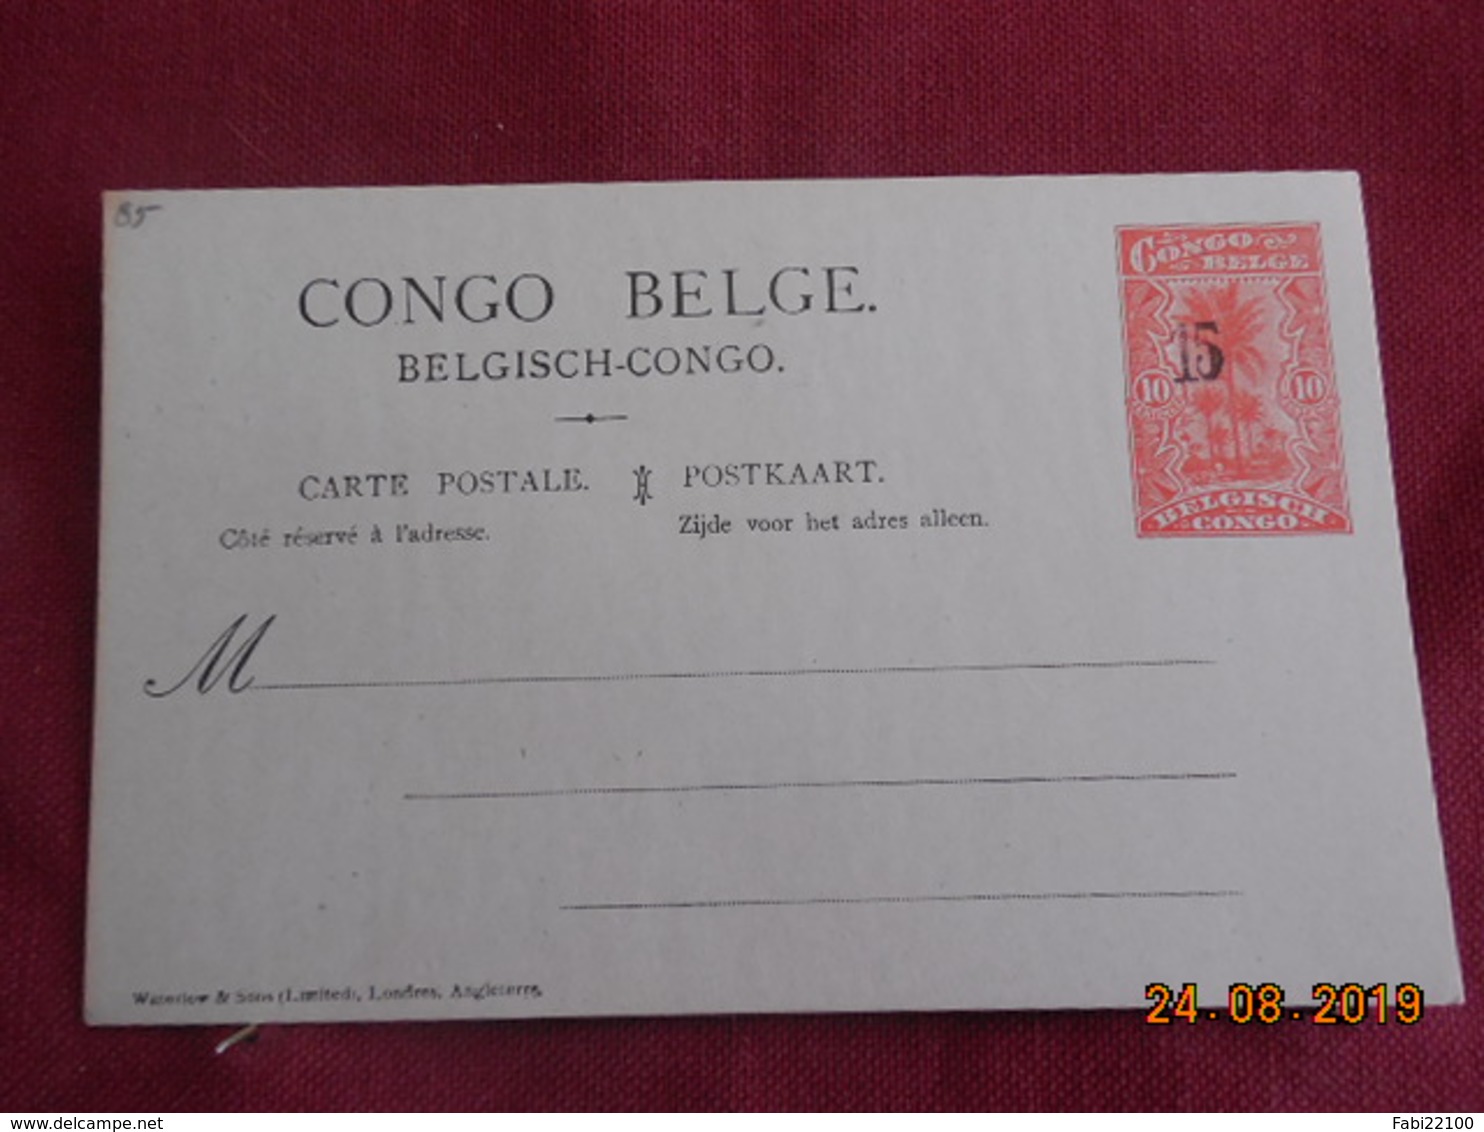 Entier Postal Du Congo Belge Surchargé - Lettres & Documents